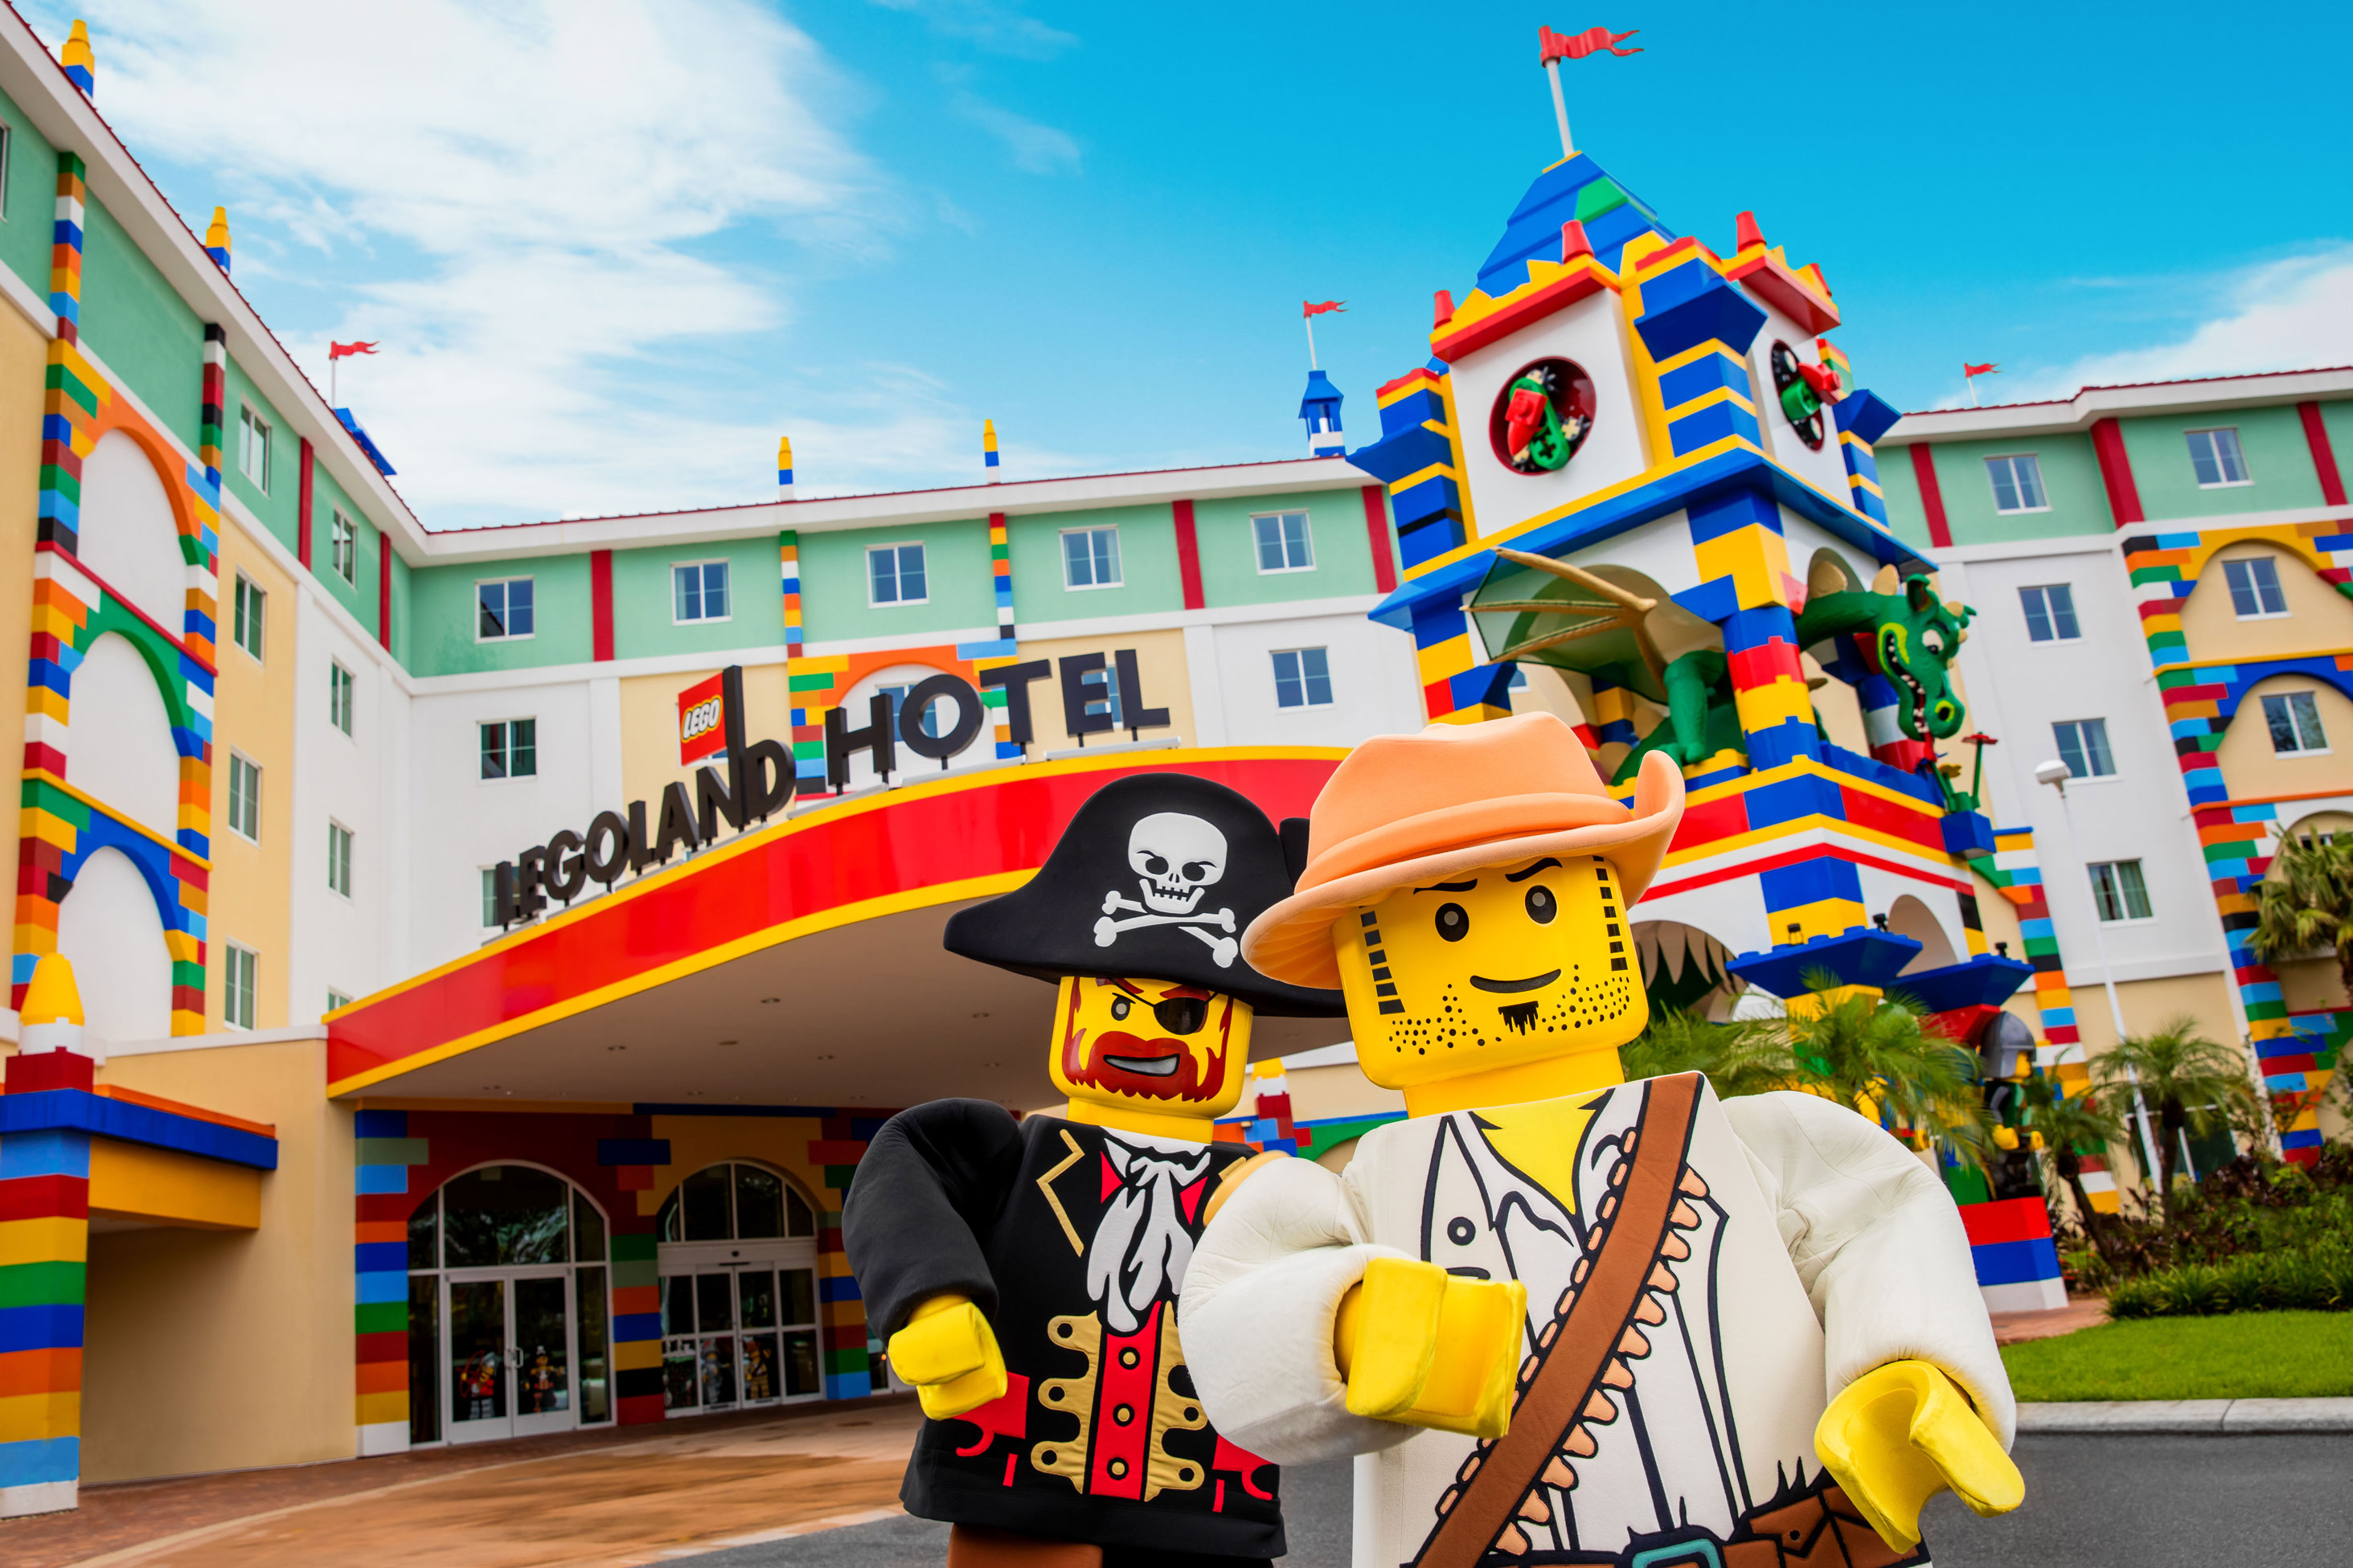 Legoland Hotel | Vacation Planning Legoland Florida Resorts